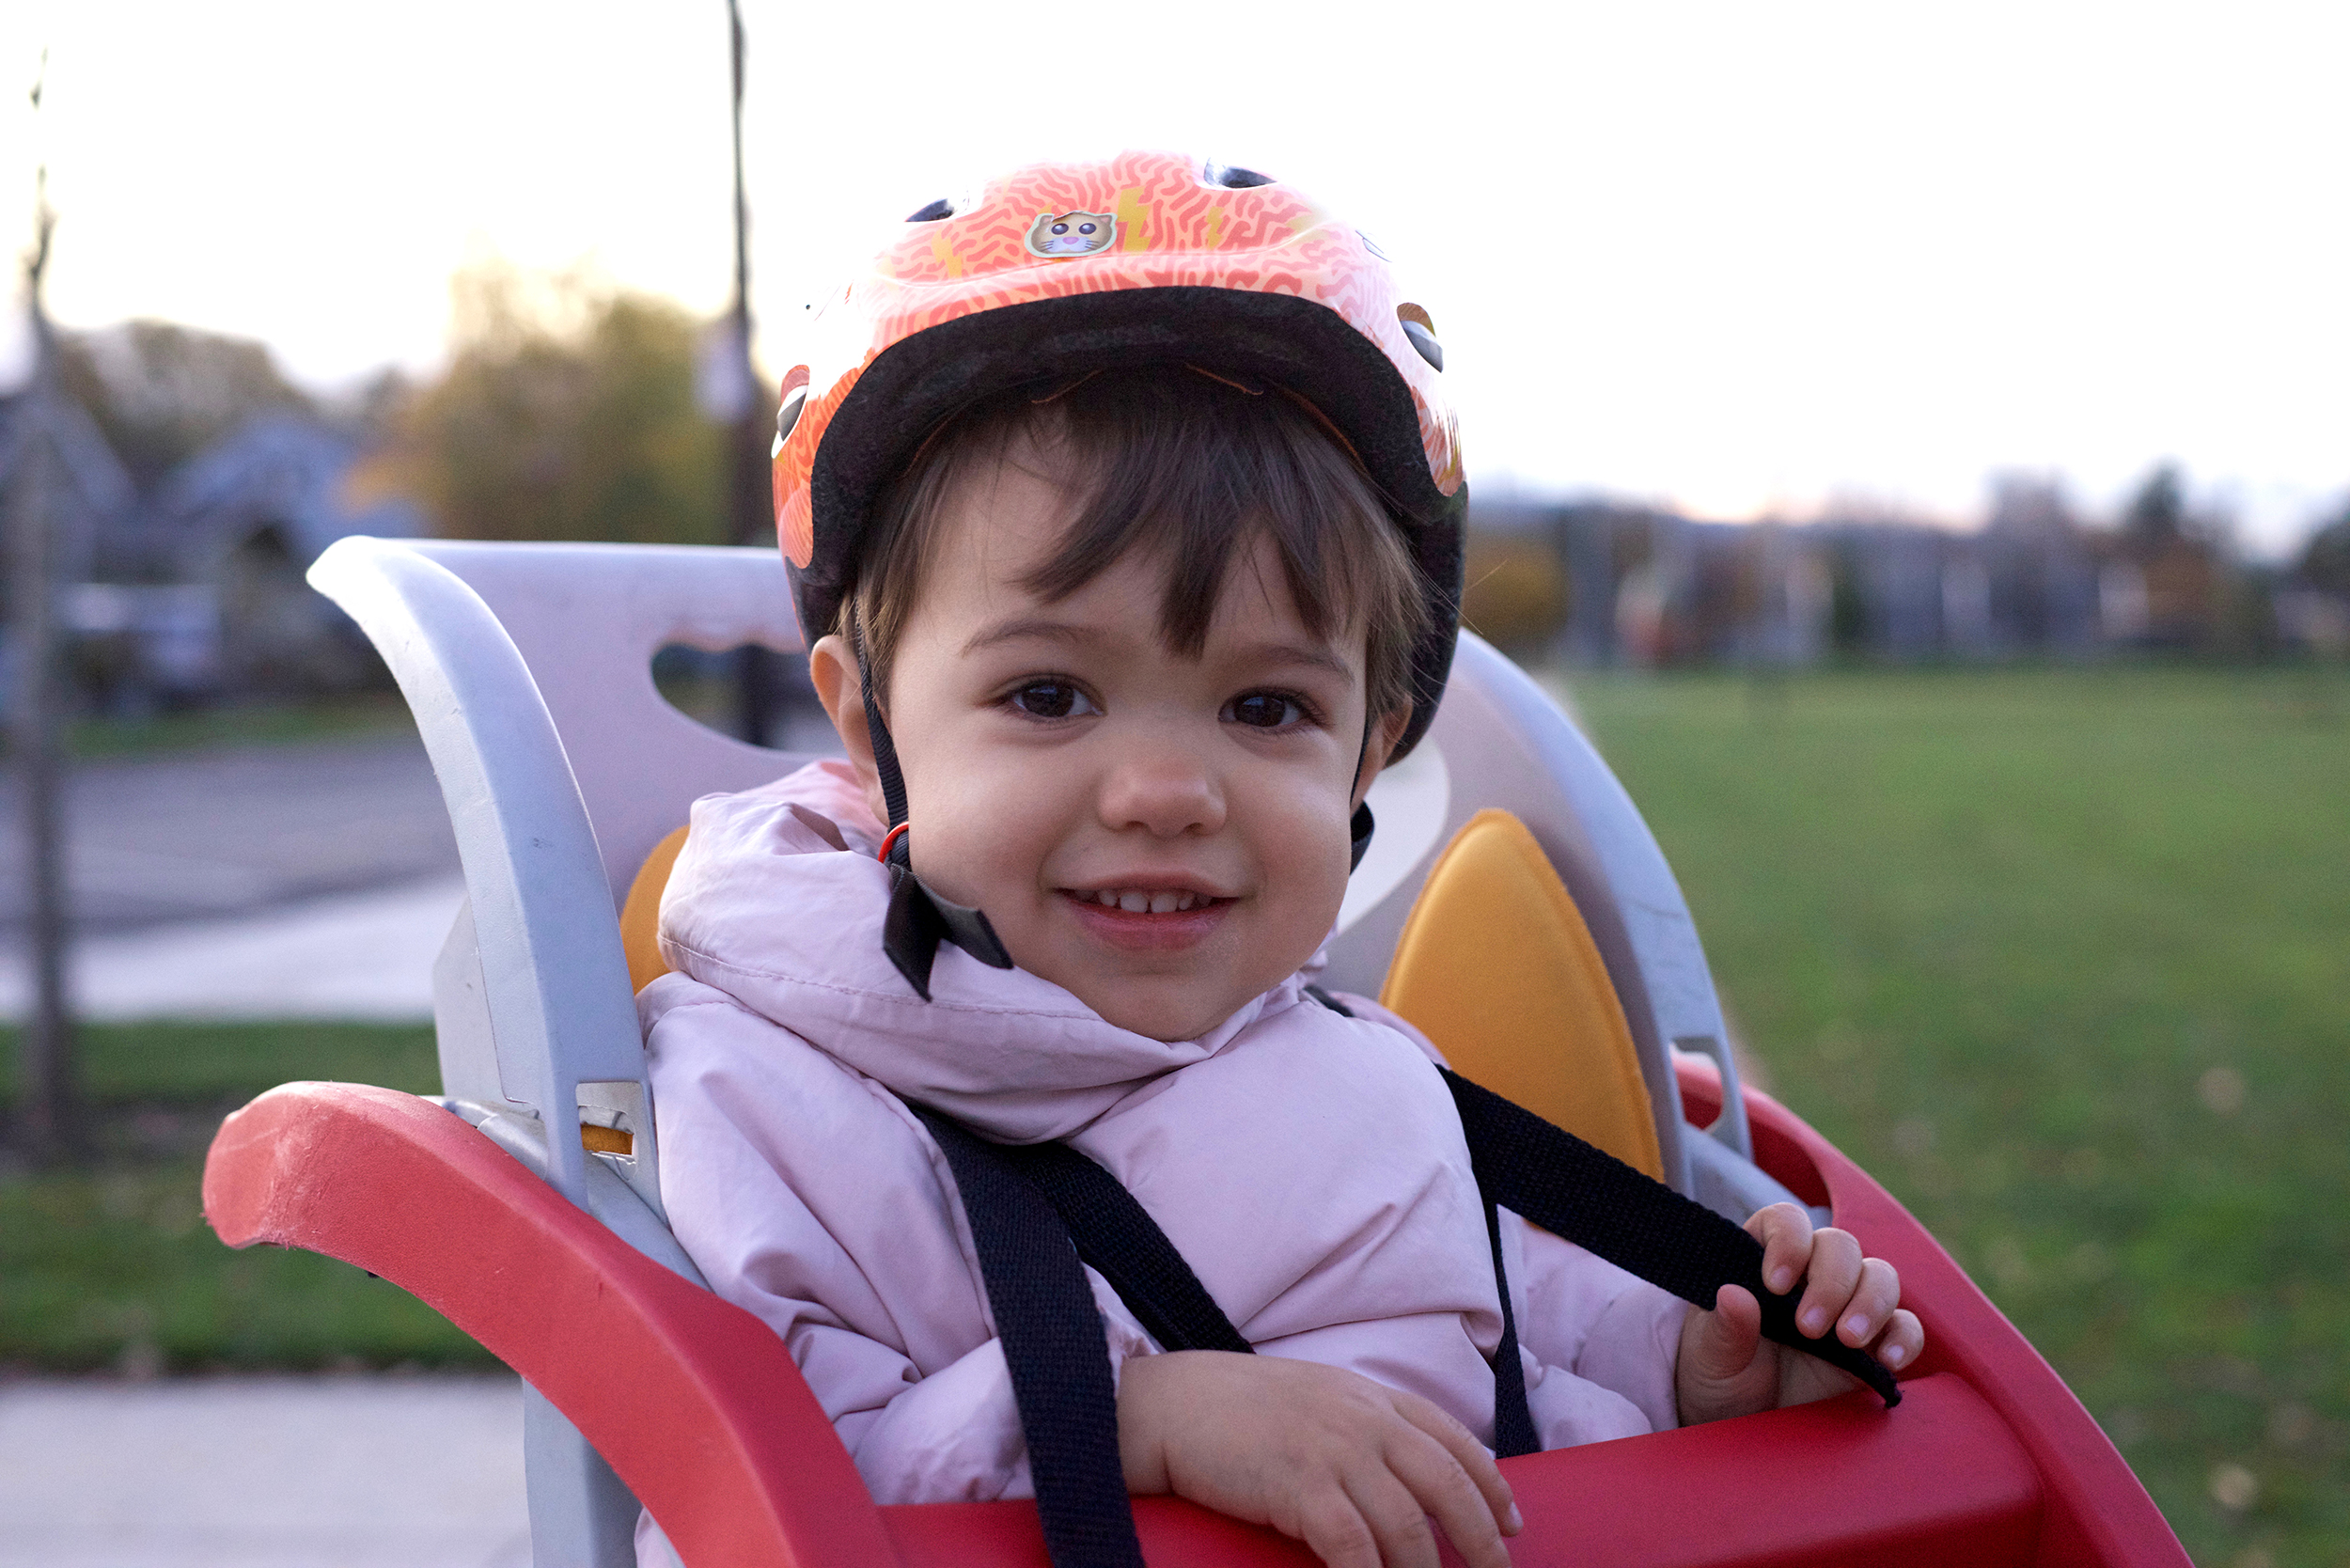 Child wearing a bike helmet and sitting on a bike